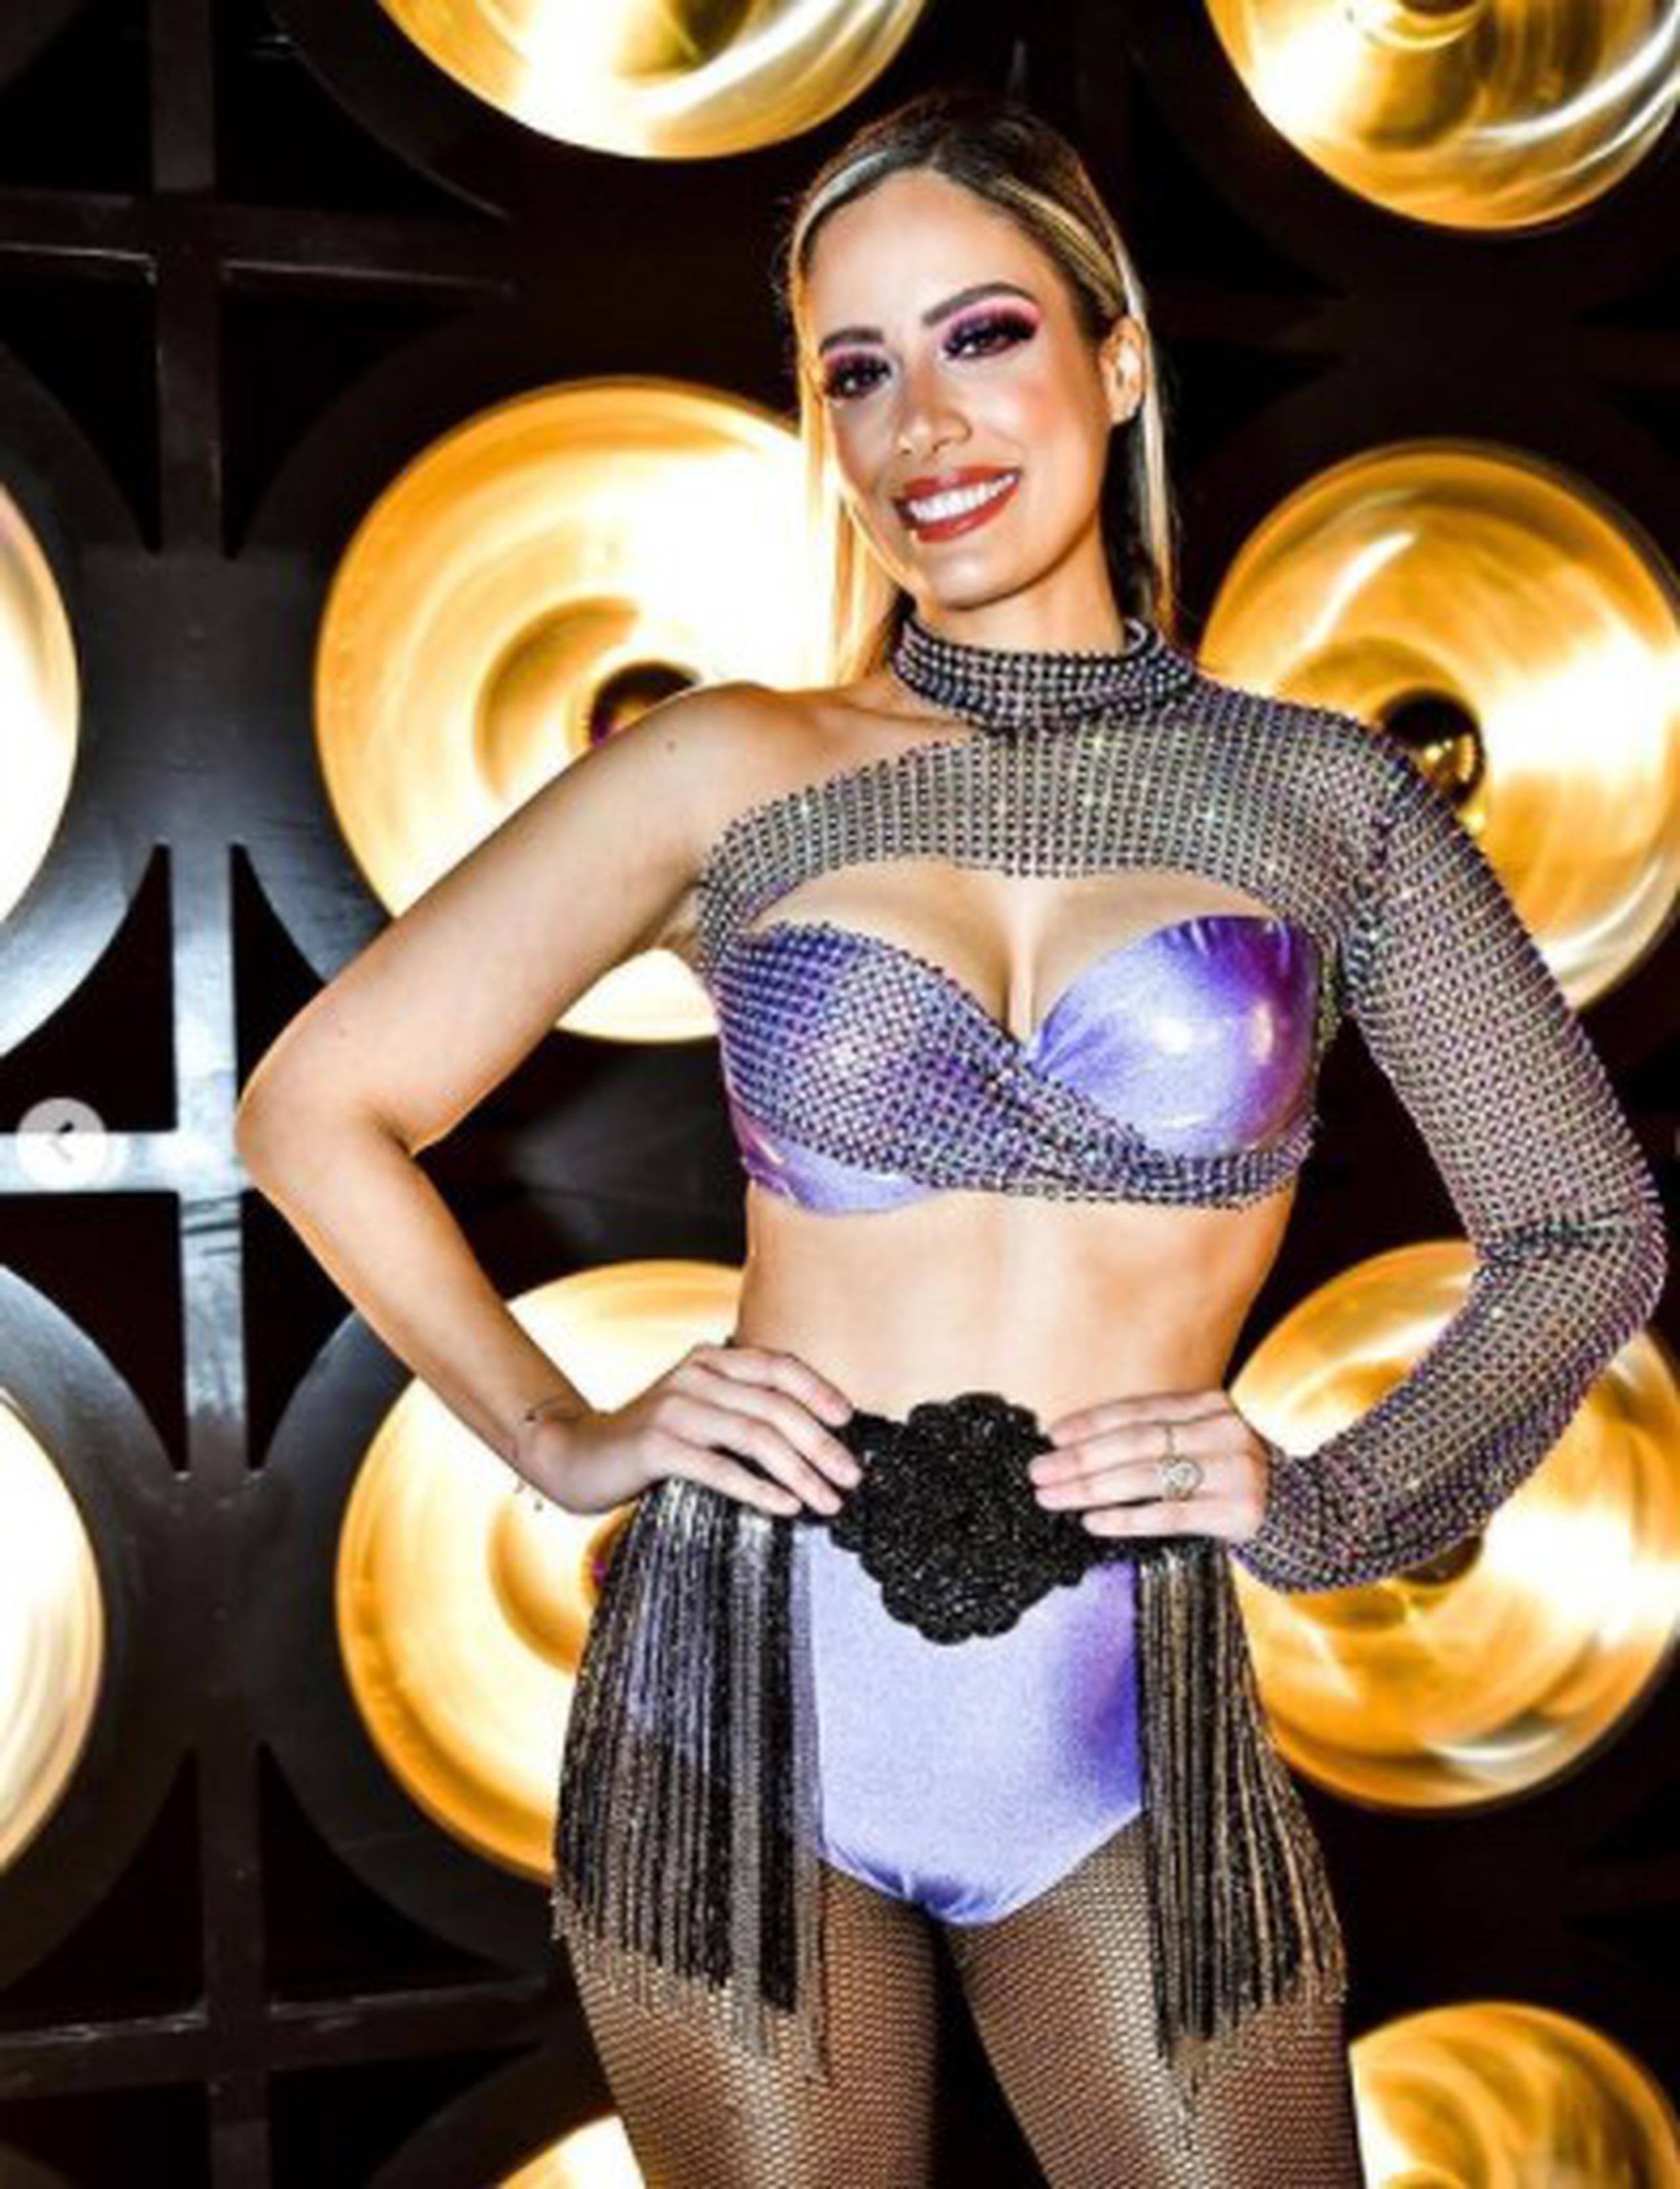 La puertorriqueña Aleyda Ortiz queda en segundo lugar en la competencia "Mira quién baila" de Univision.